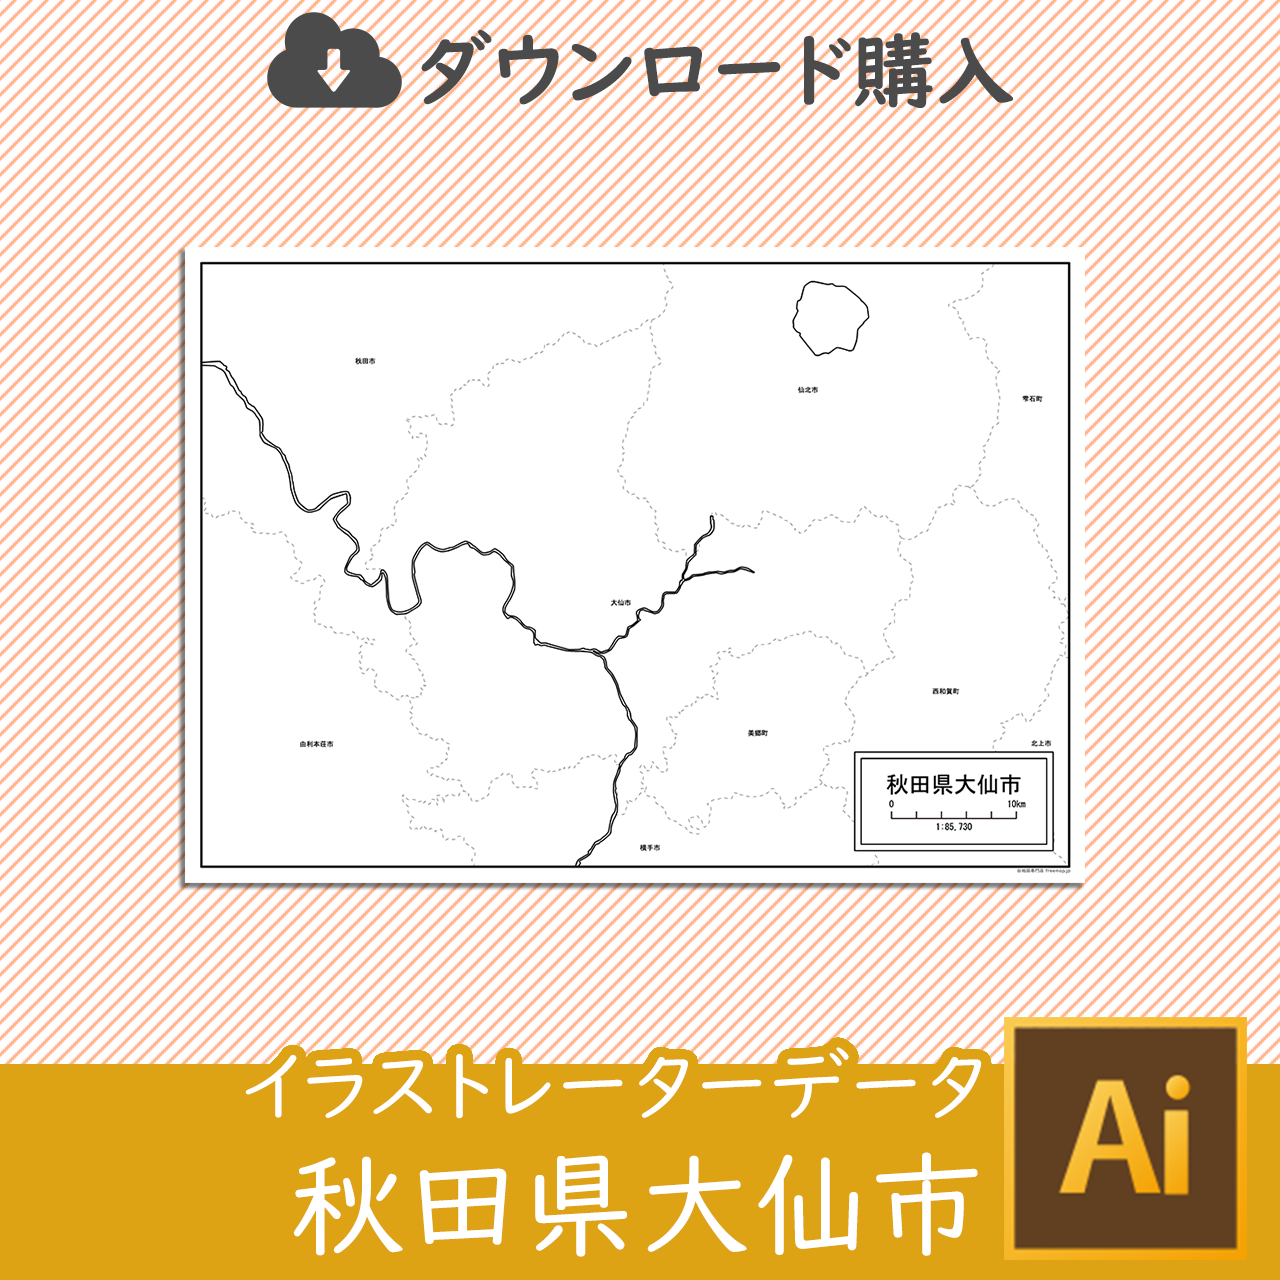 大仙市の白地図のサムネイル